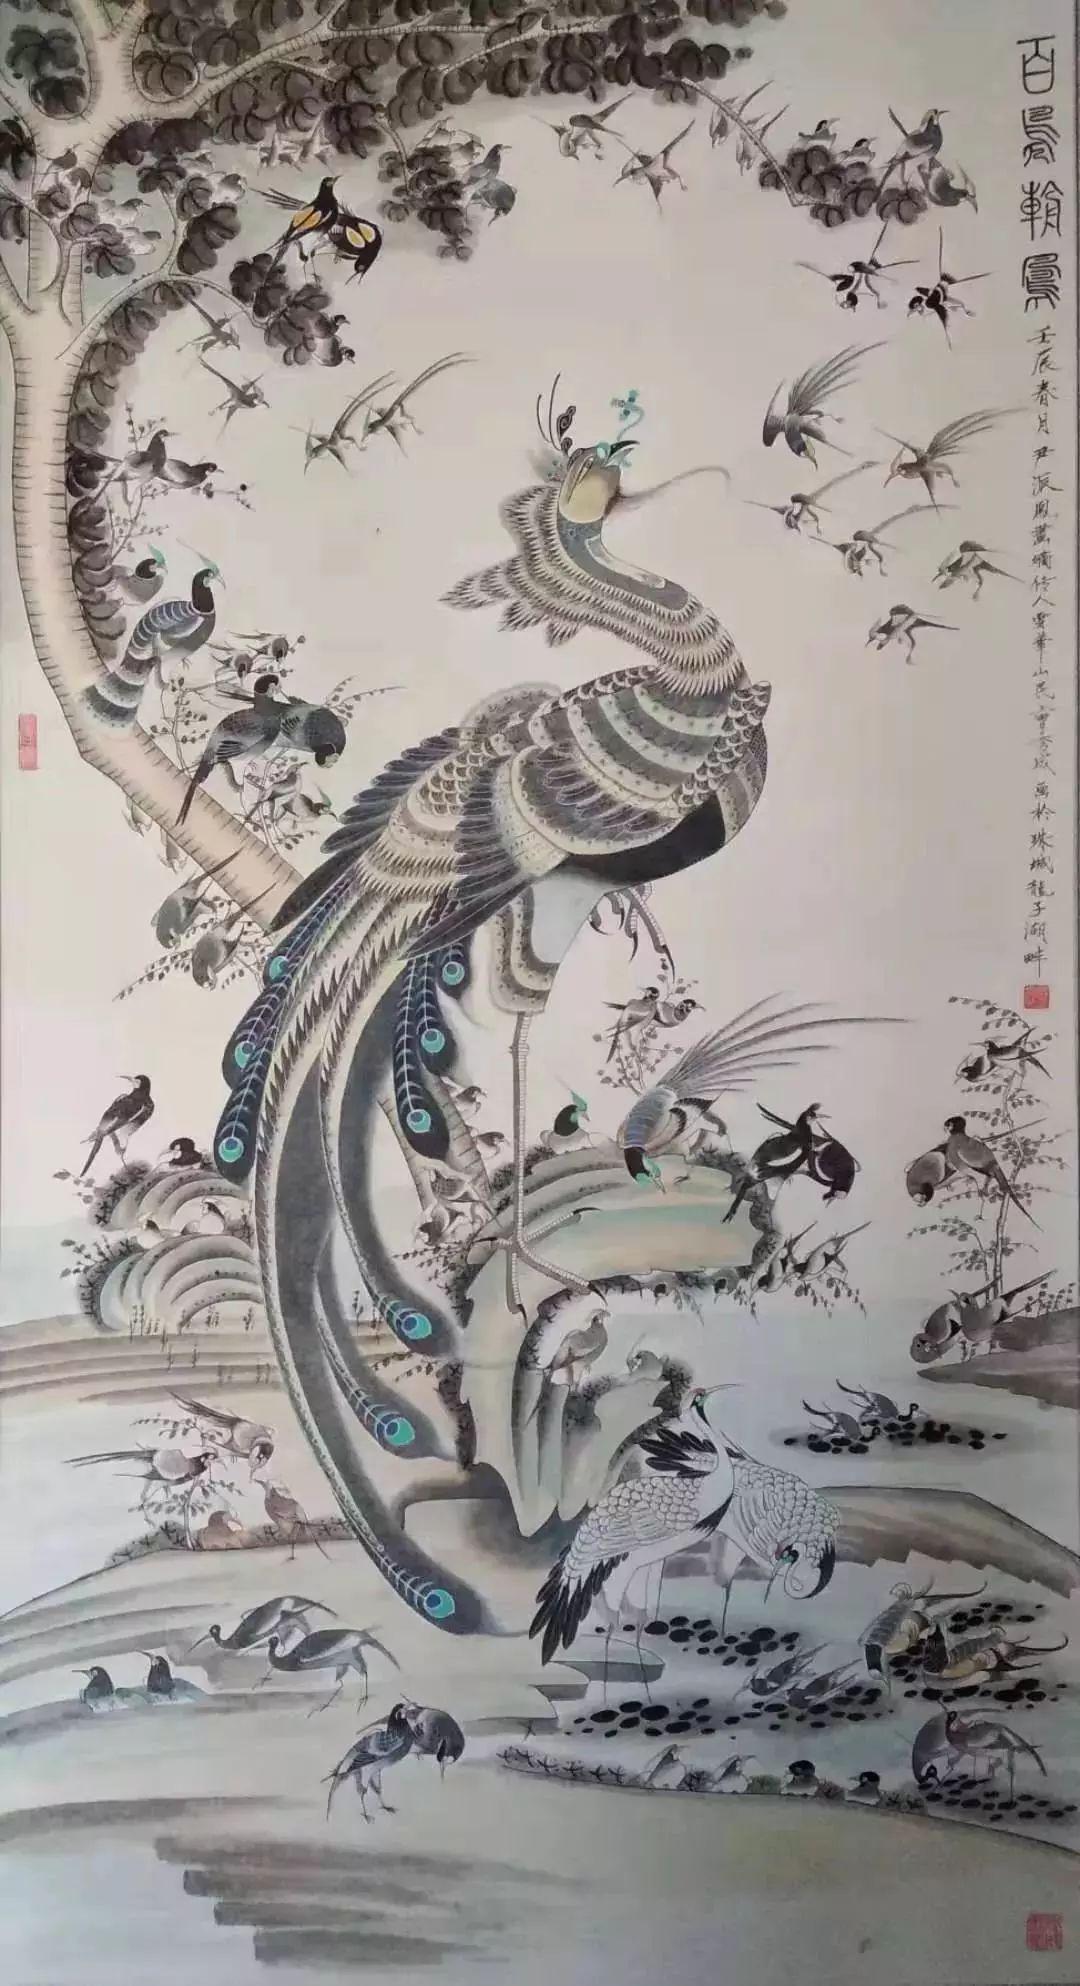 600余年以来,凤画经历艺人们的不断创新和发展,逐渐形成了独特的绘制